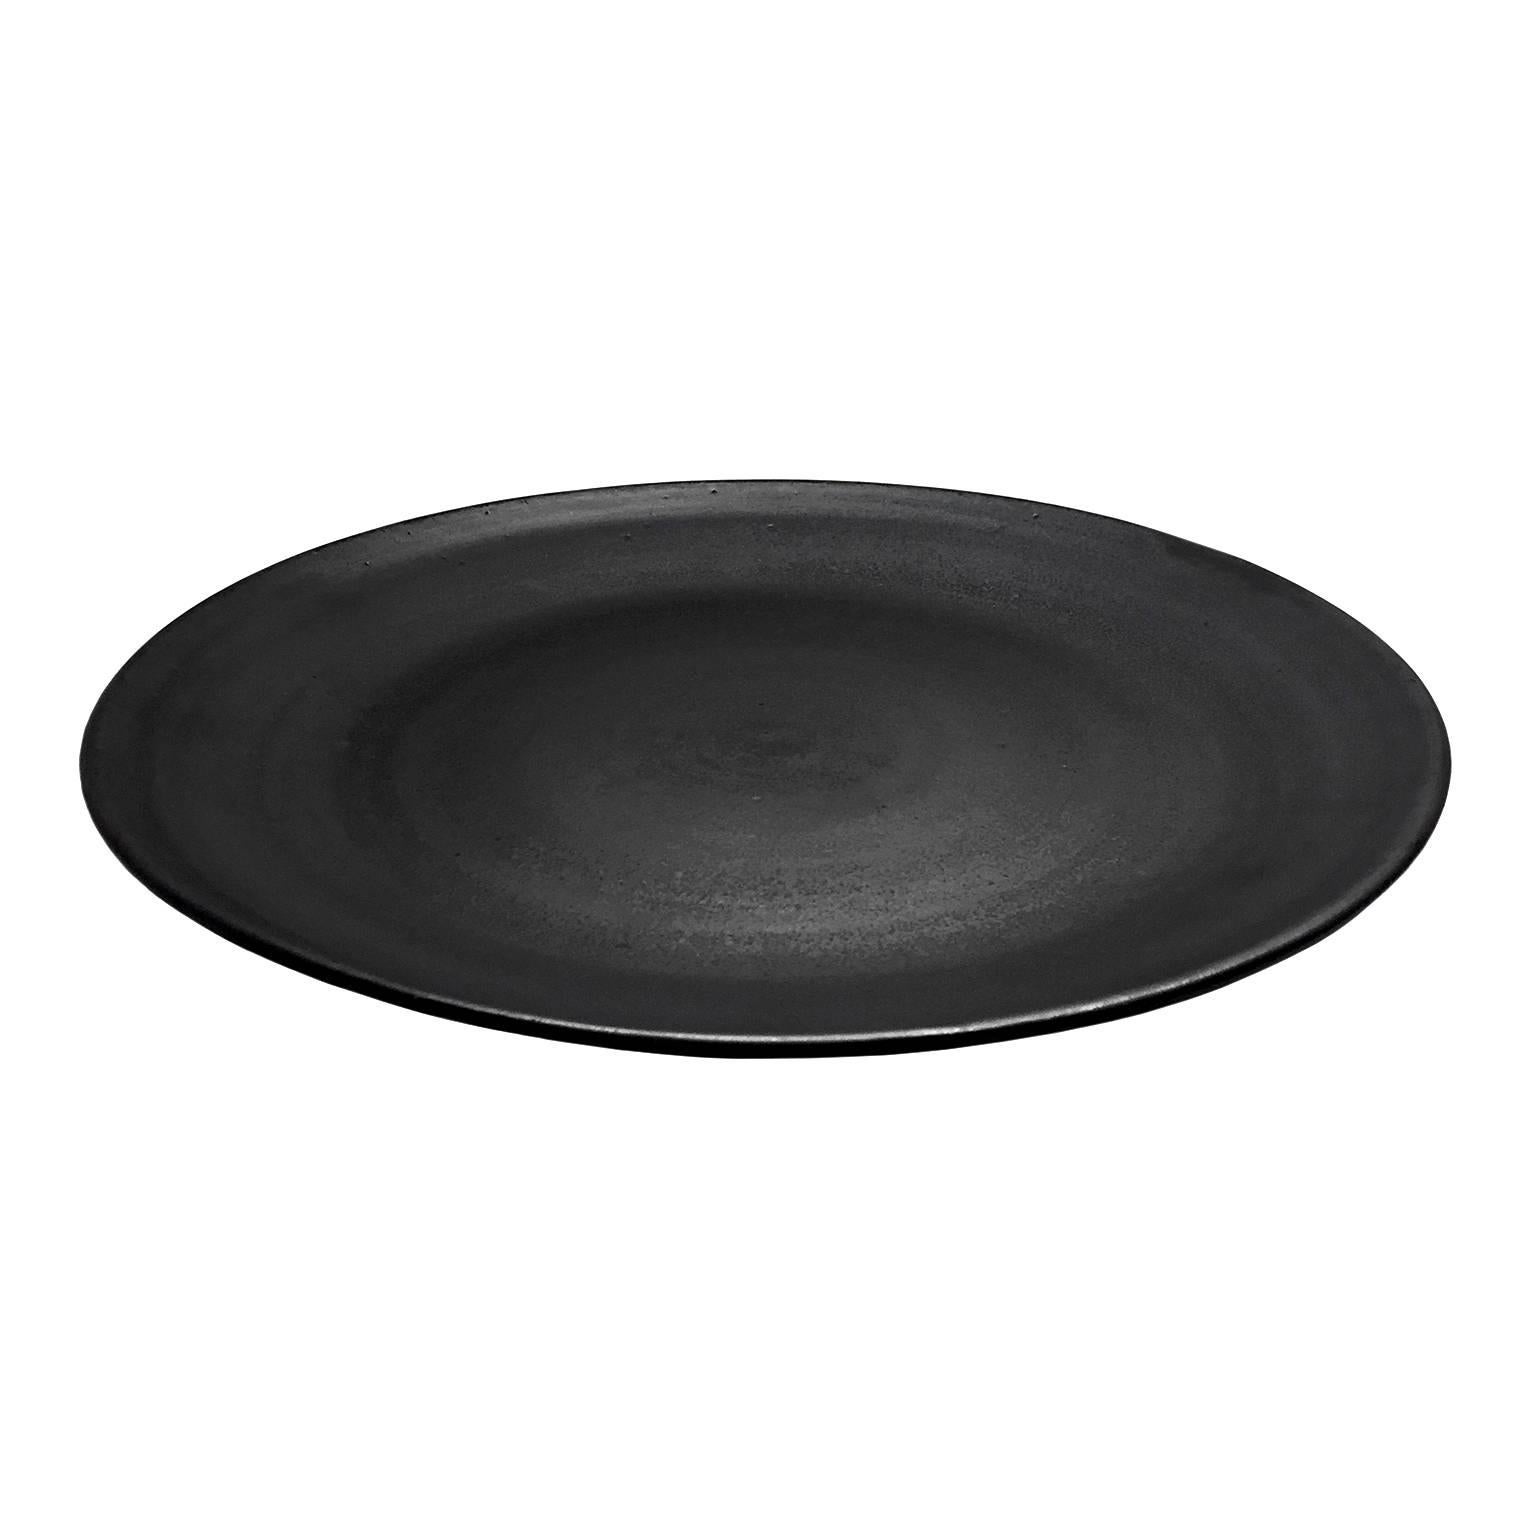 Black Wax Glaze Ceramic Round Tray by Sandi Fellman